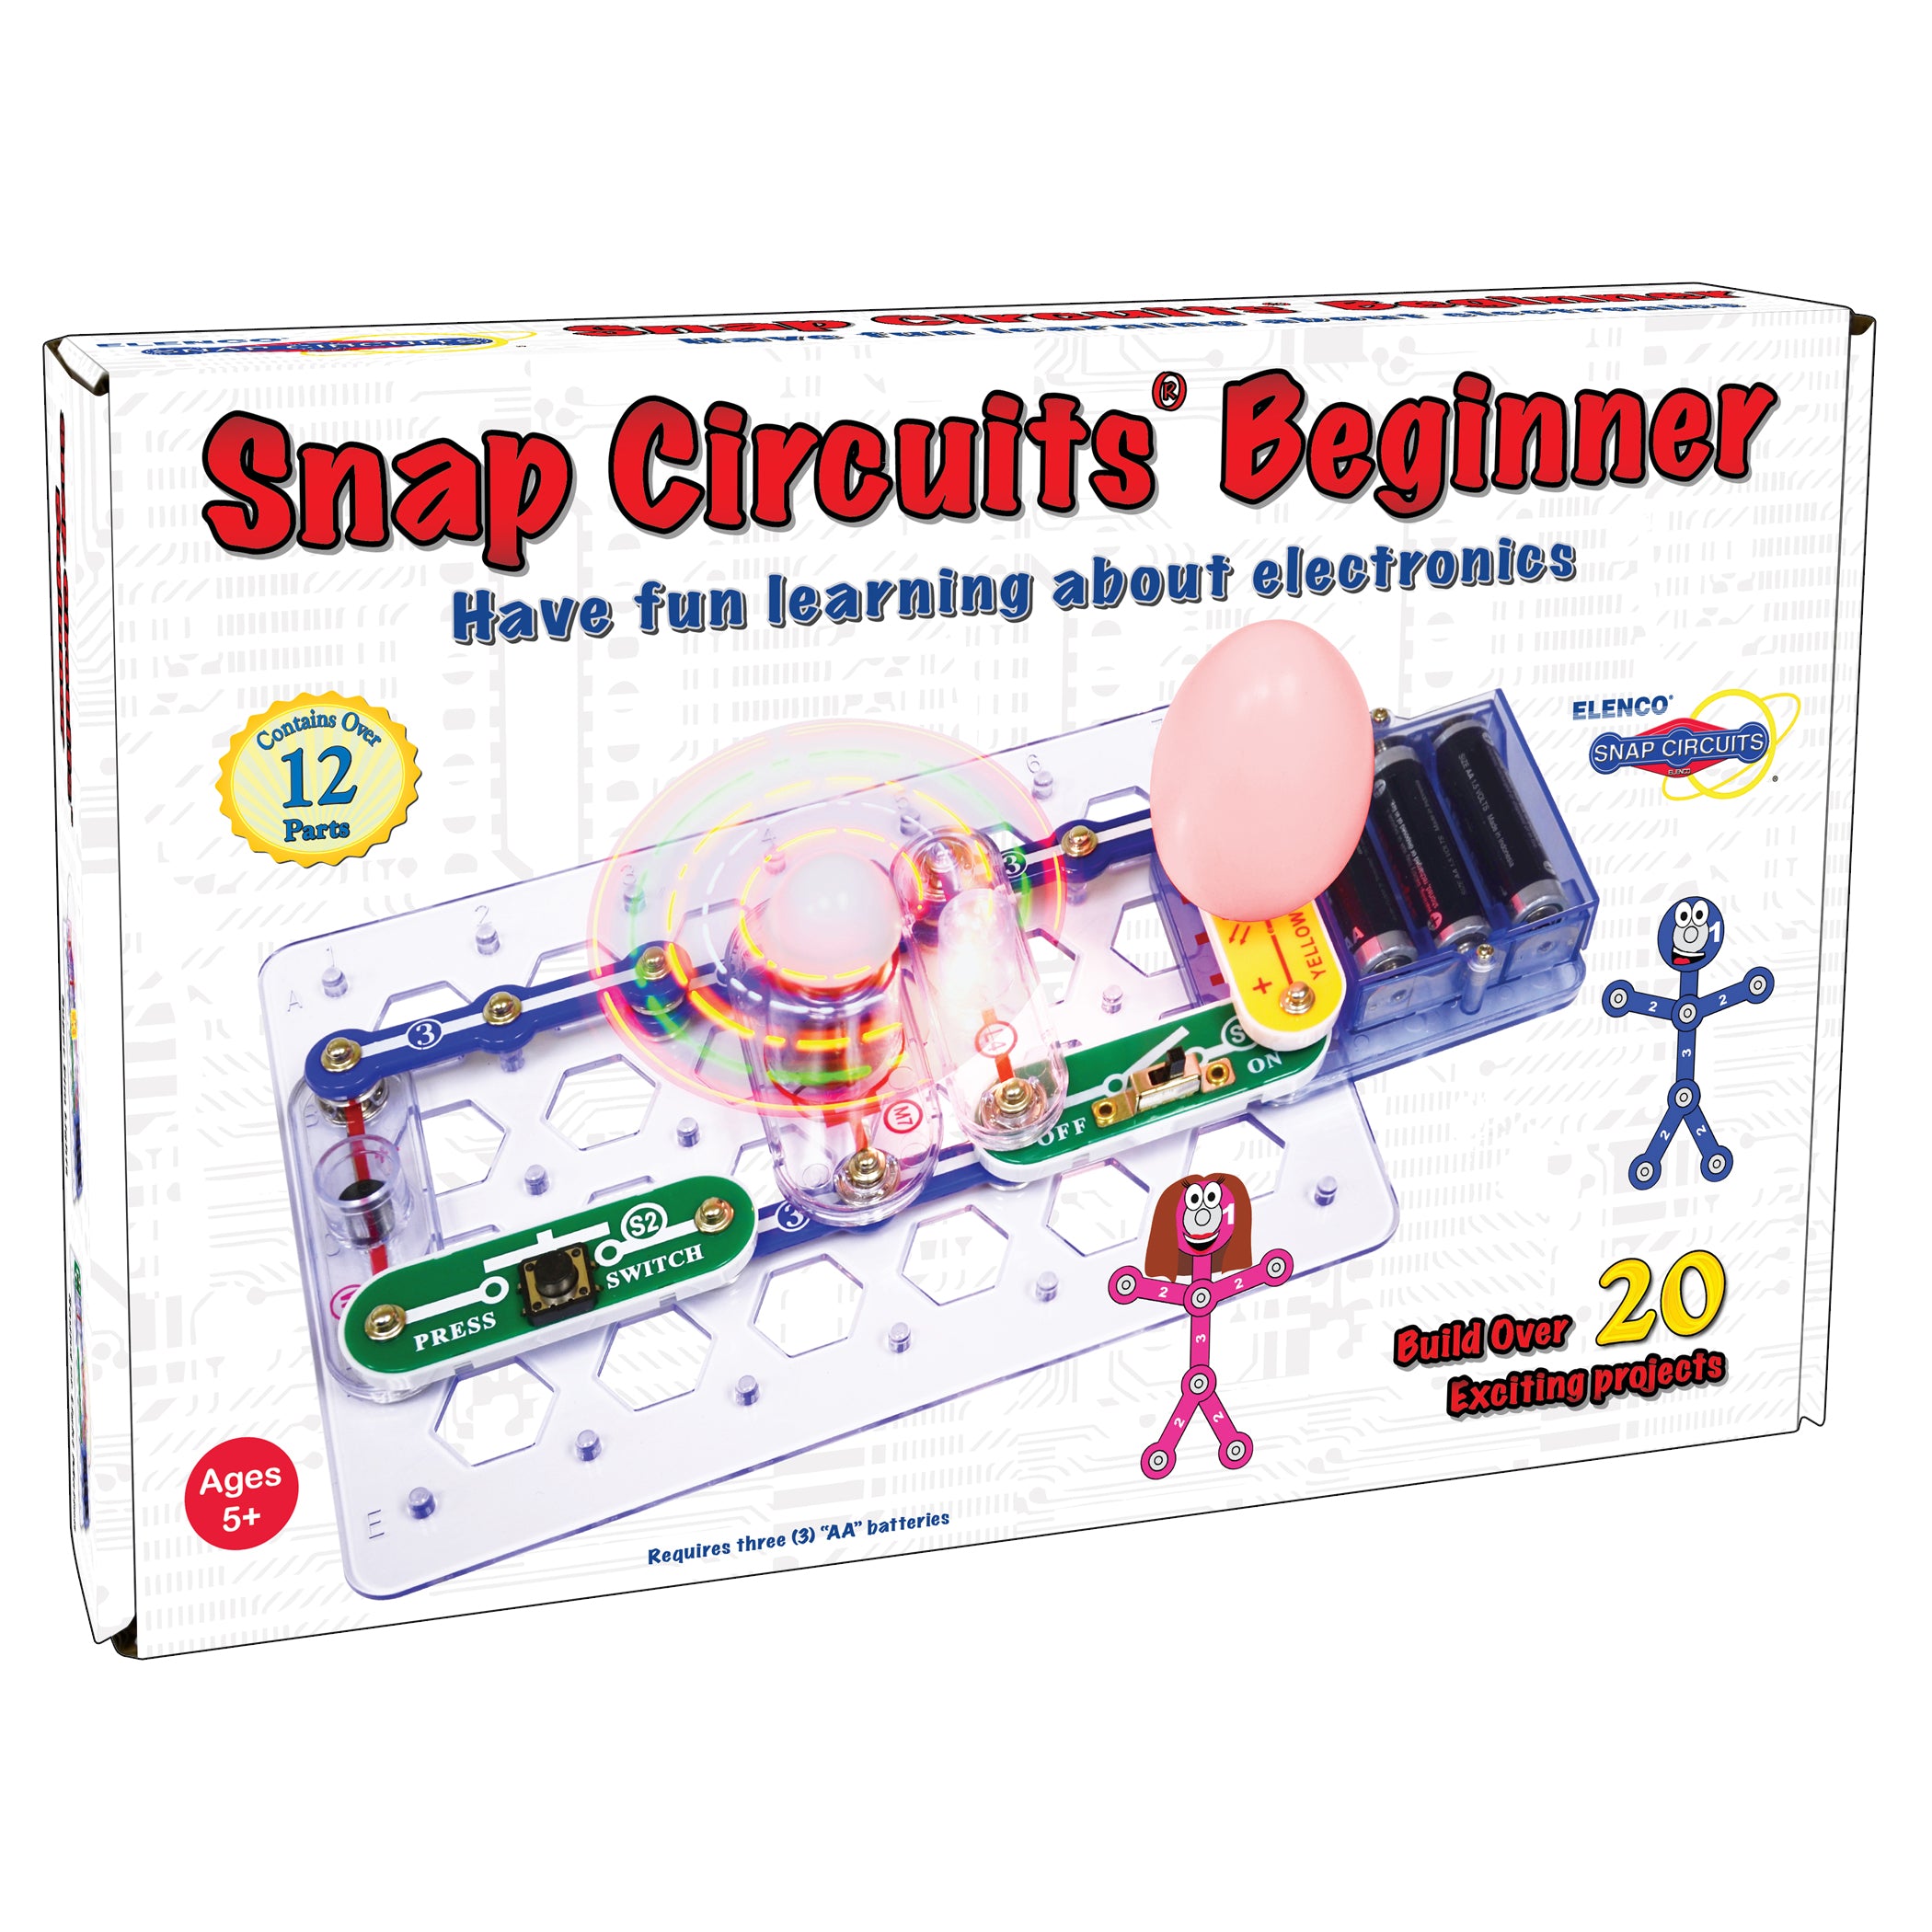 Snap Circuits® Beginner - A1 School Supplies